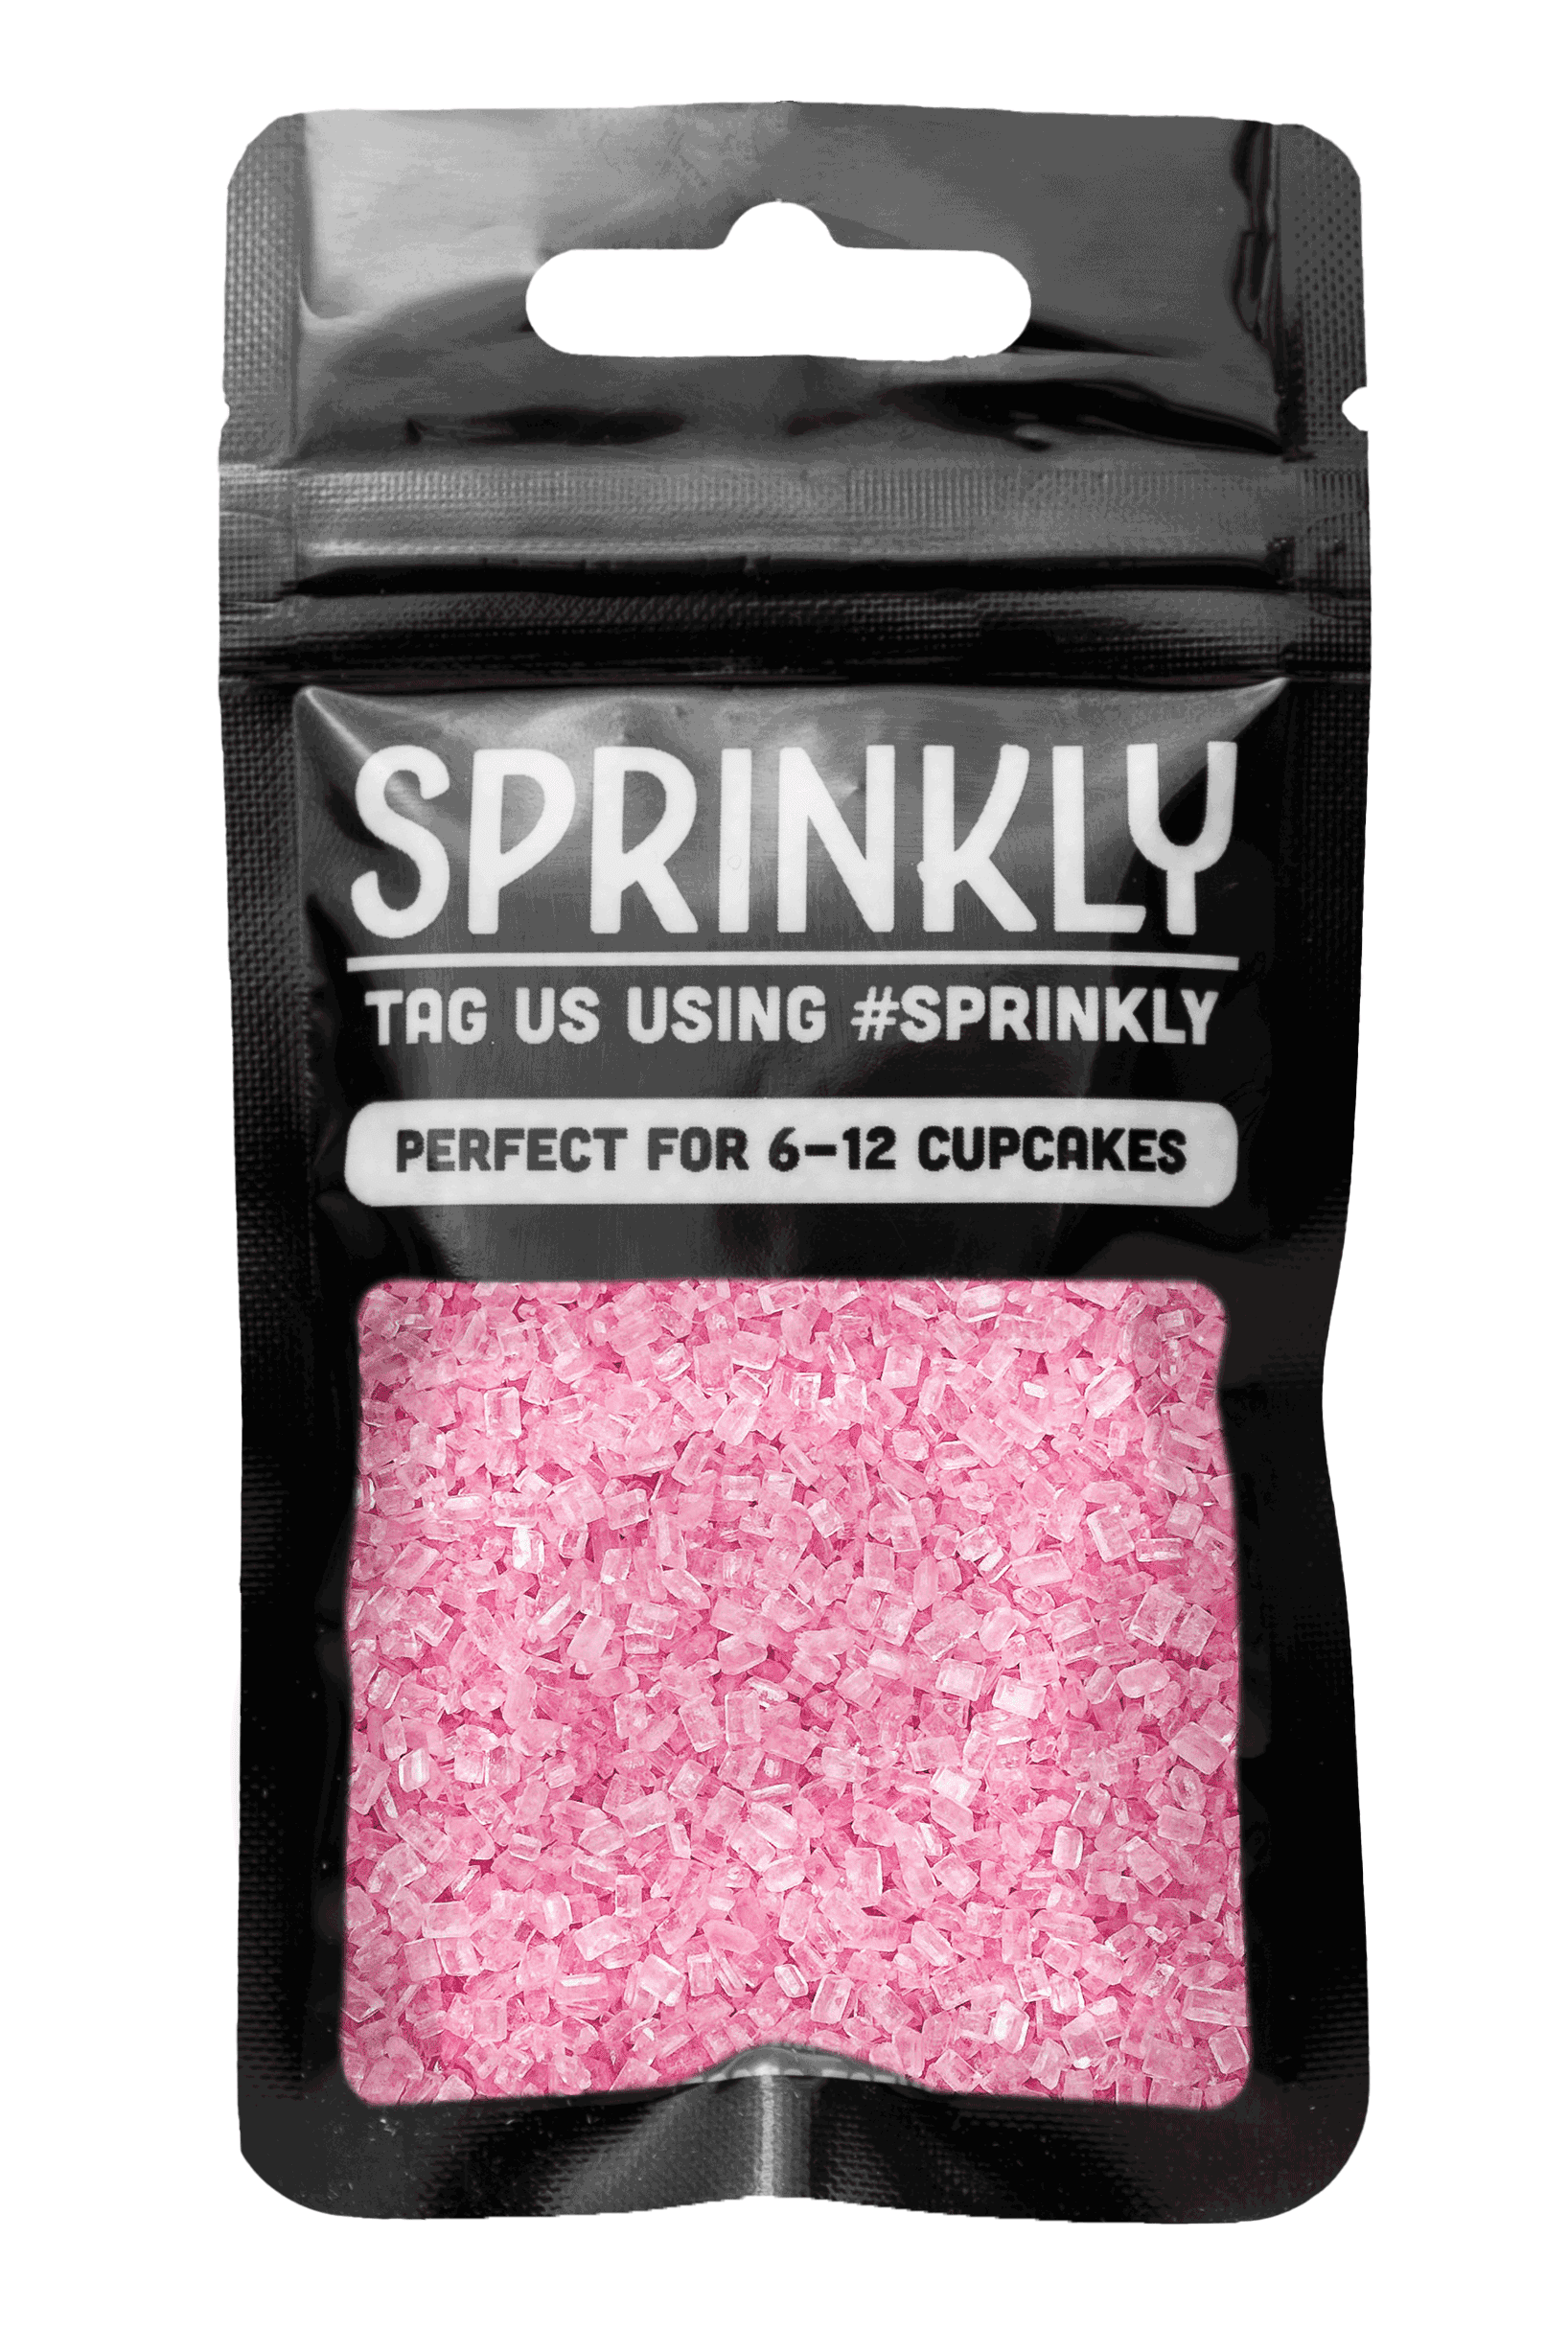 Sugar Crystals - Pink Sprinkles Sprinkly 30g Sample Packet